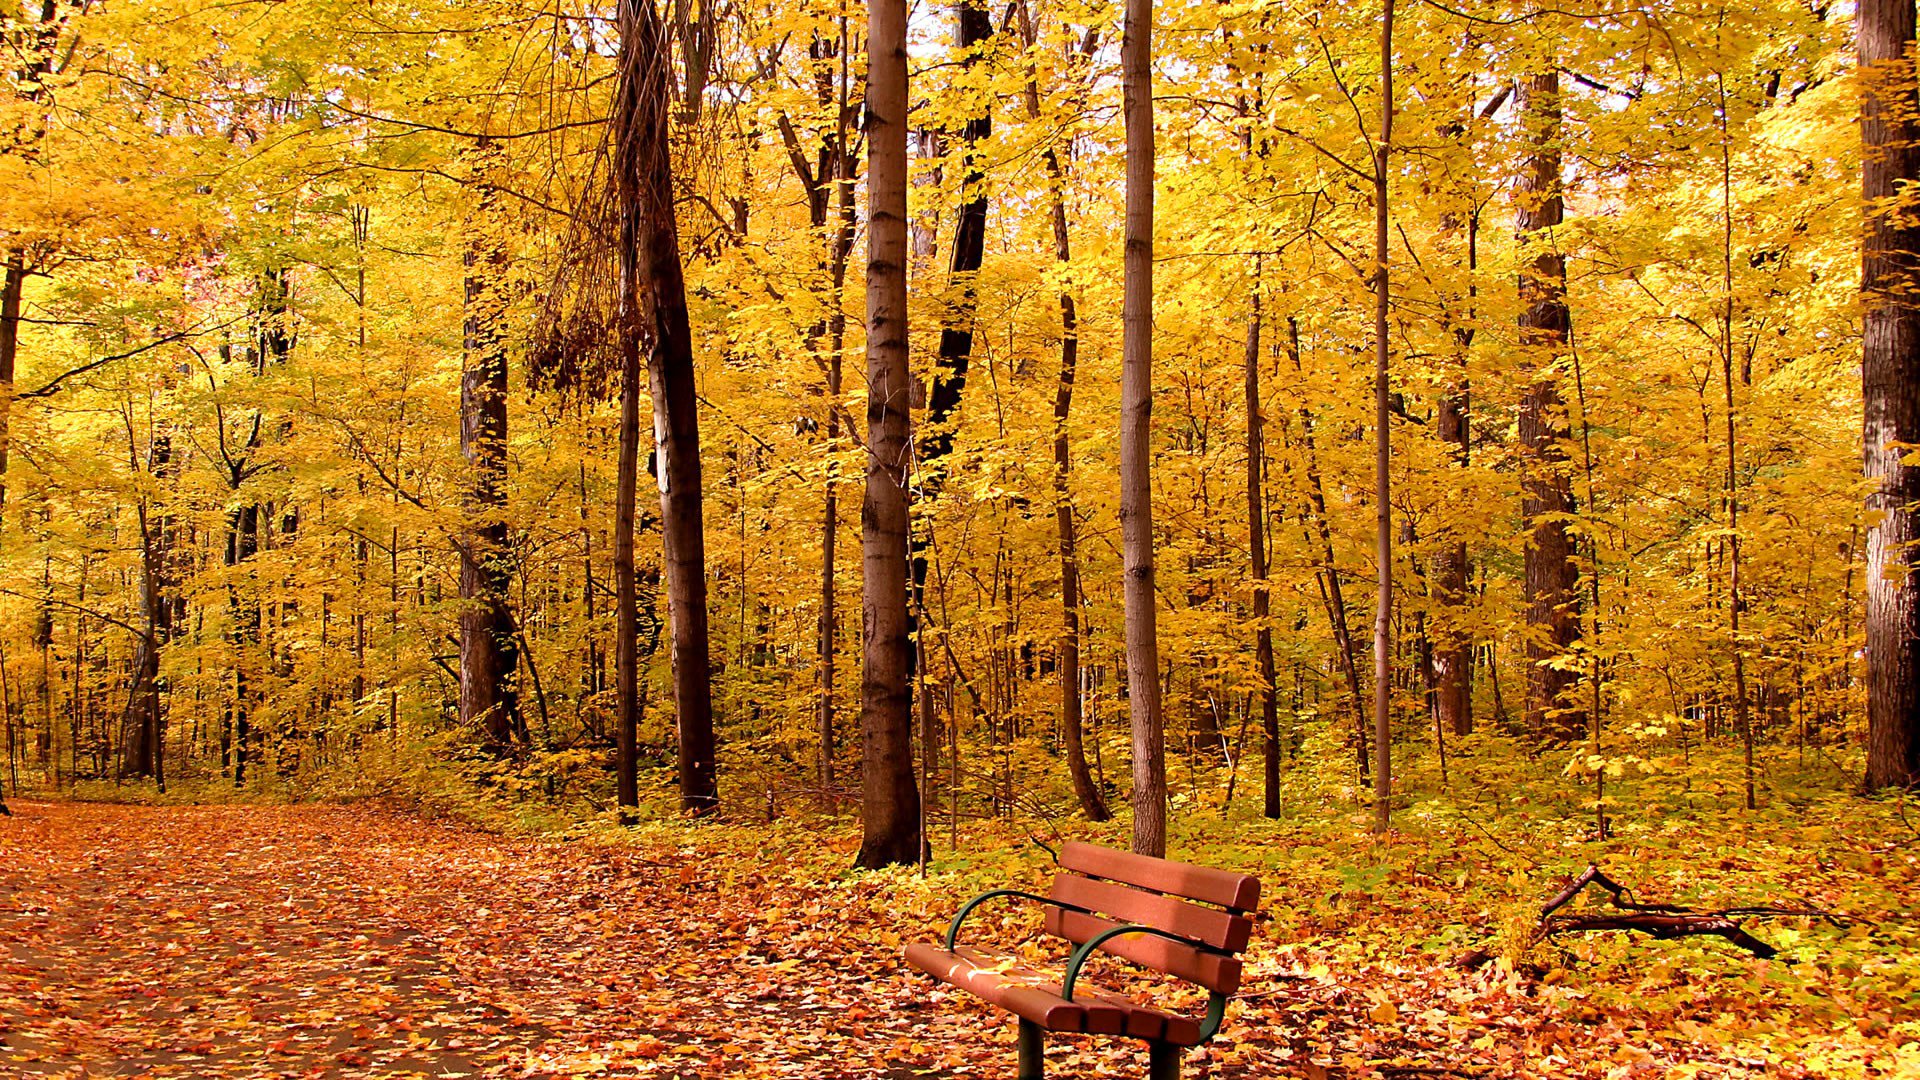 parc allée banc arbres feuillage automne feuilles